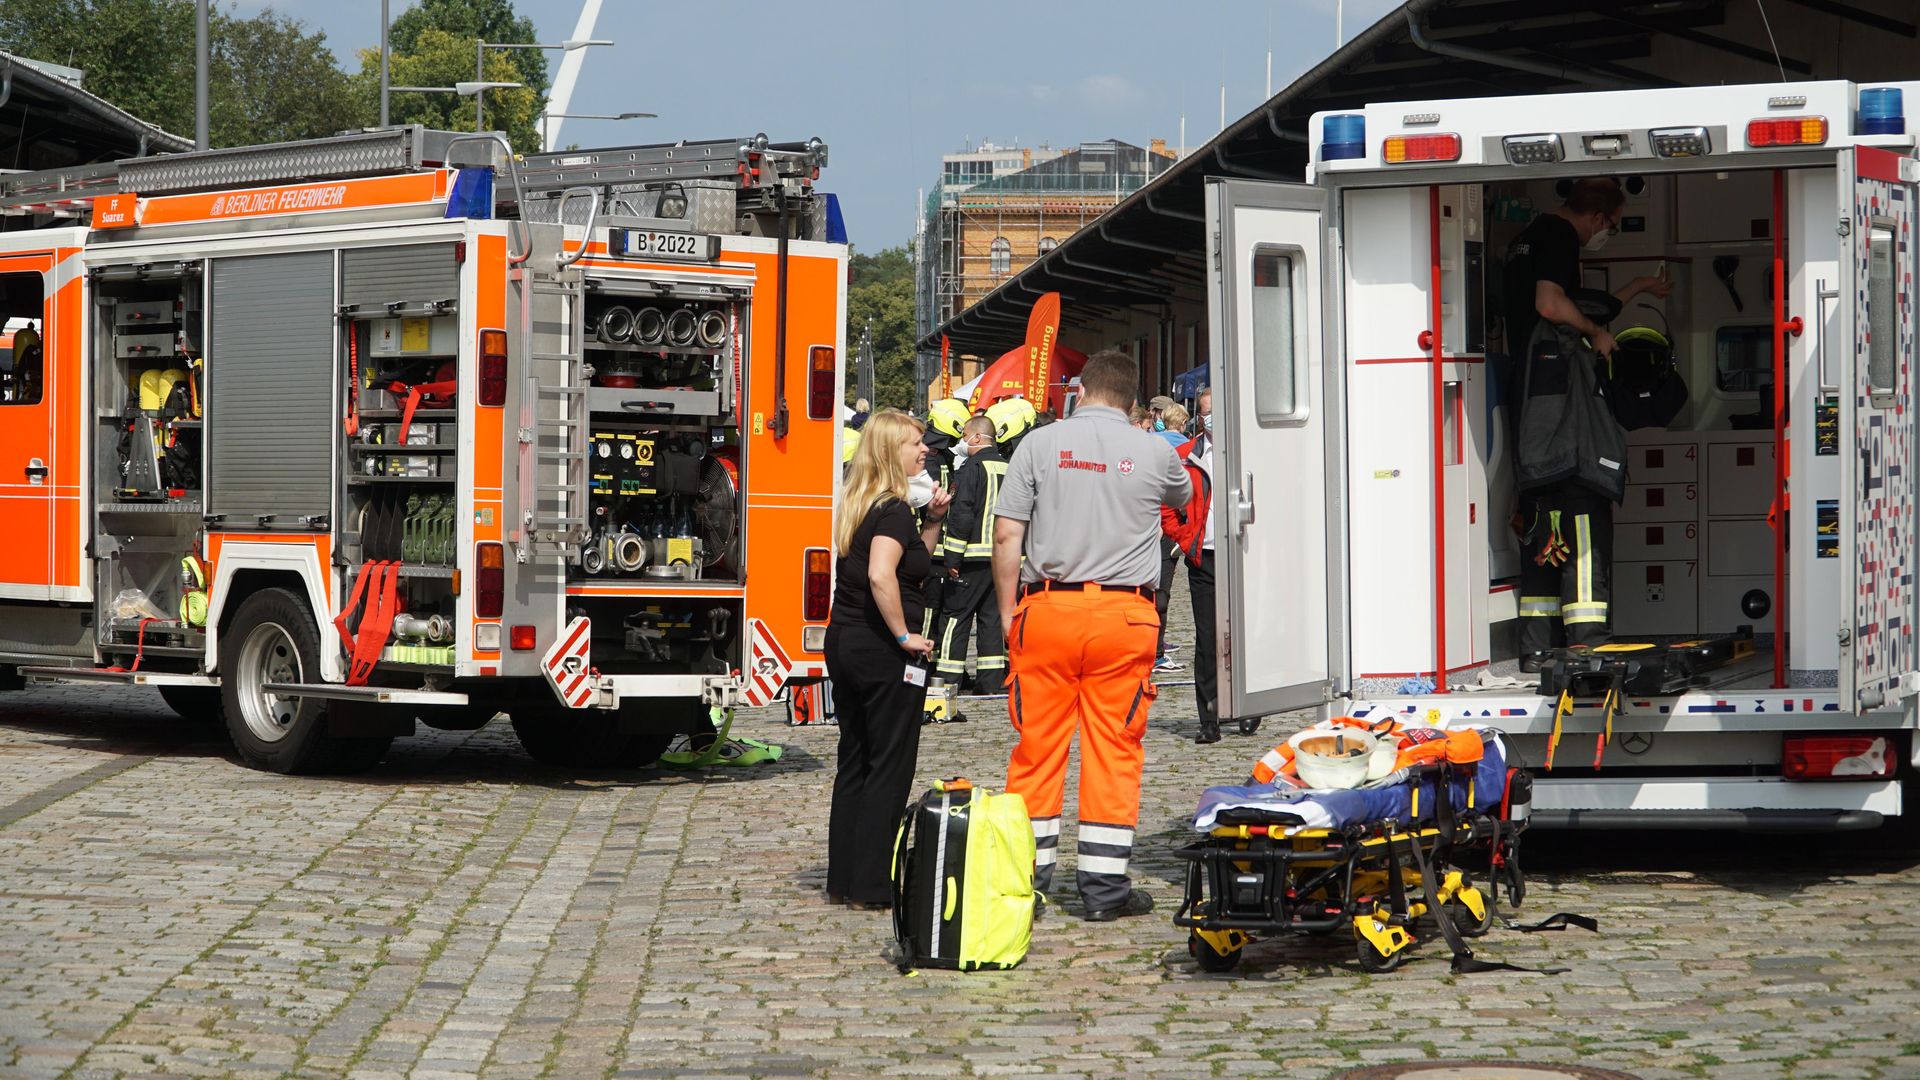 Zwei geöffnette Rettungswagen stehen in der Ladestrasse des Museums zur Besichtigung durch Besuchende.